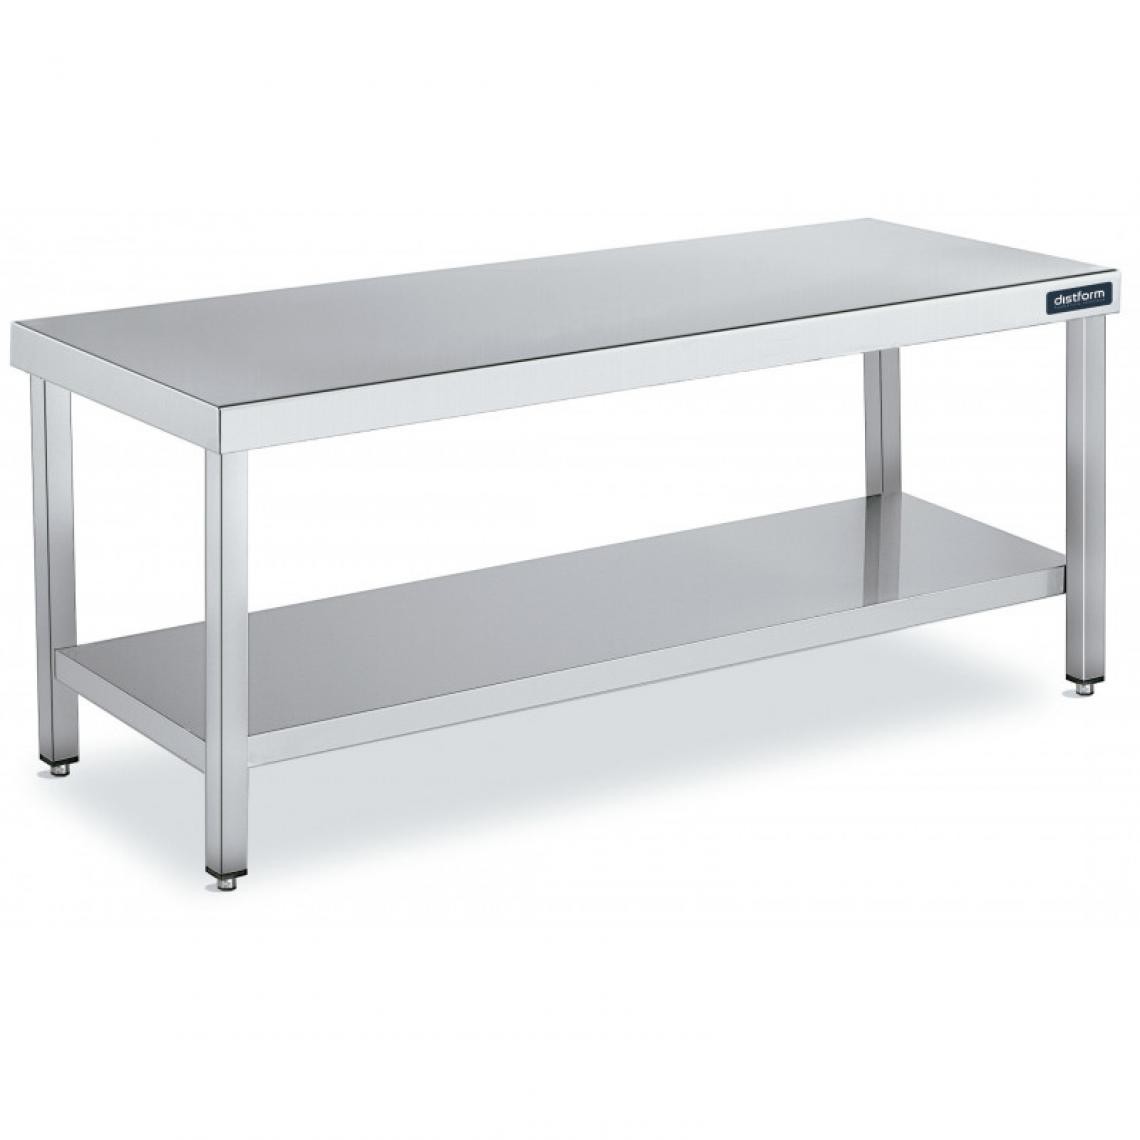 DISTFORM - Table de Travail Centrale Inox avec 1 Étagère - Gamme 600 - Hauteur 600 - Distform - Acier inoxydable700x600 - Tables à manger